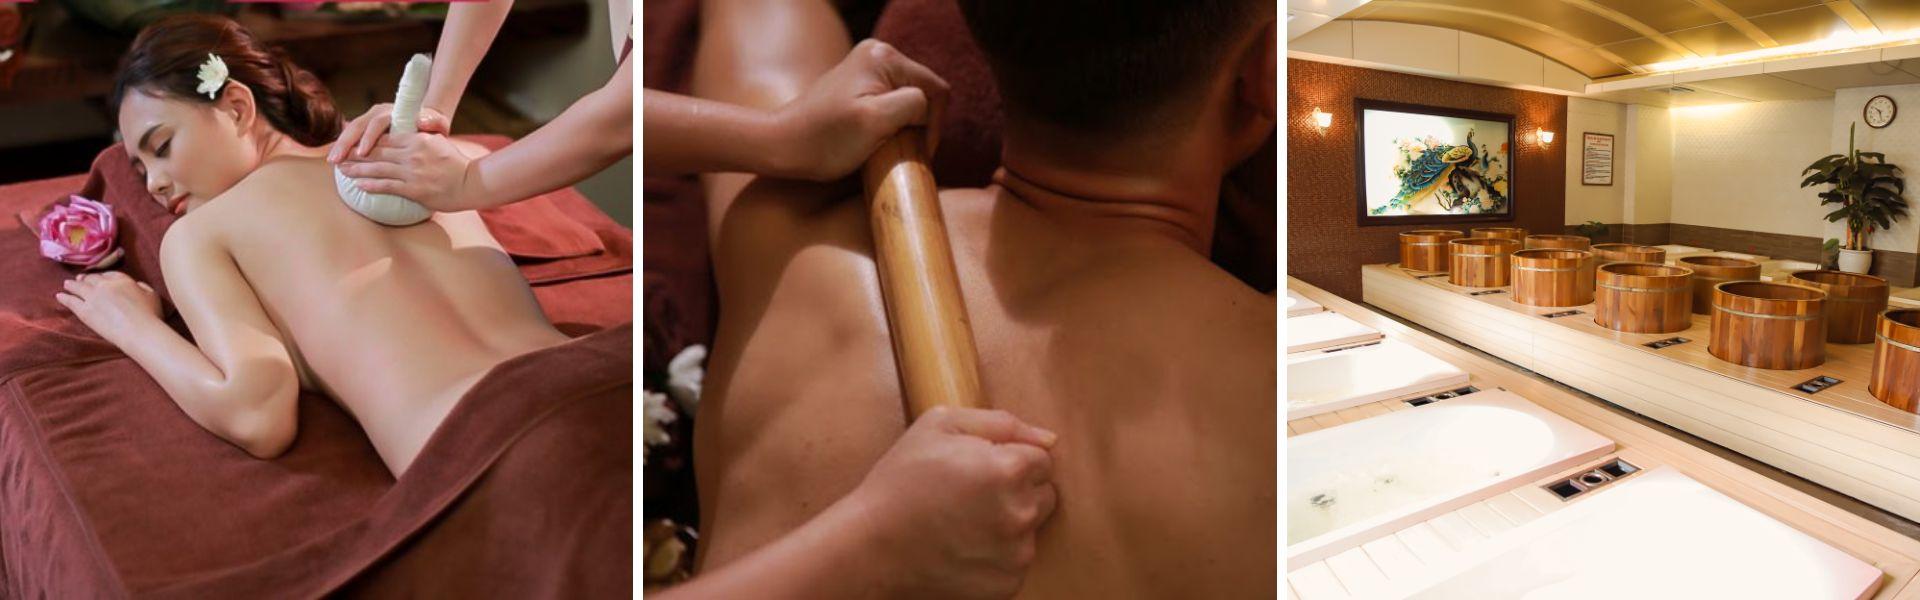 Spa & massage traditionnel en couple